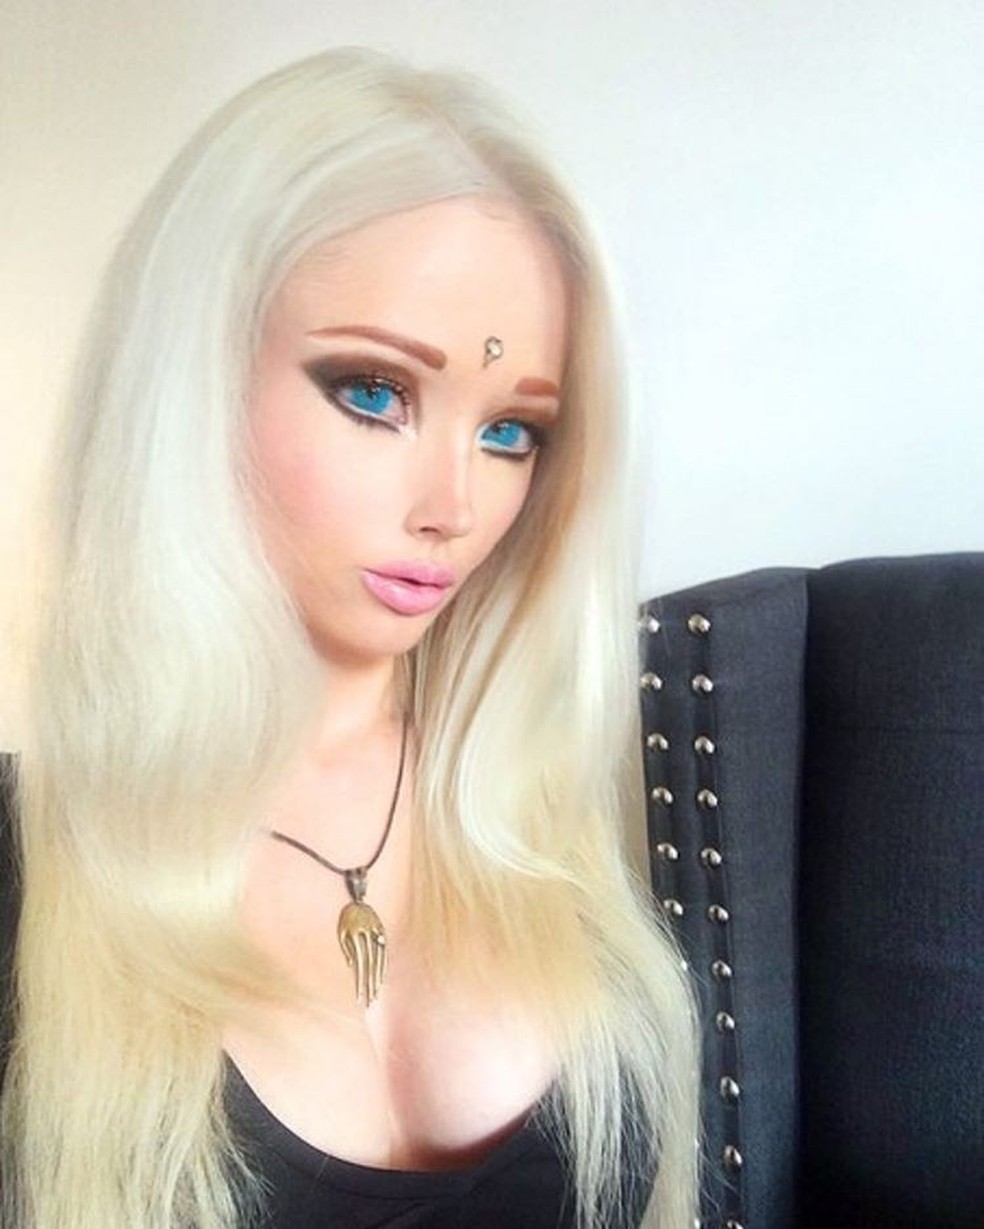 Kali, posta uma foto de maquiagem de boneca humana que de pra ver bem seus  olhos?